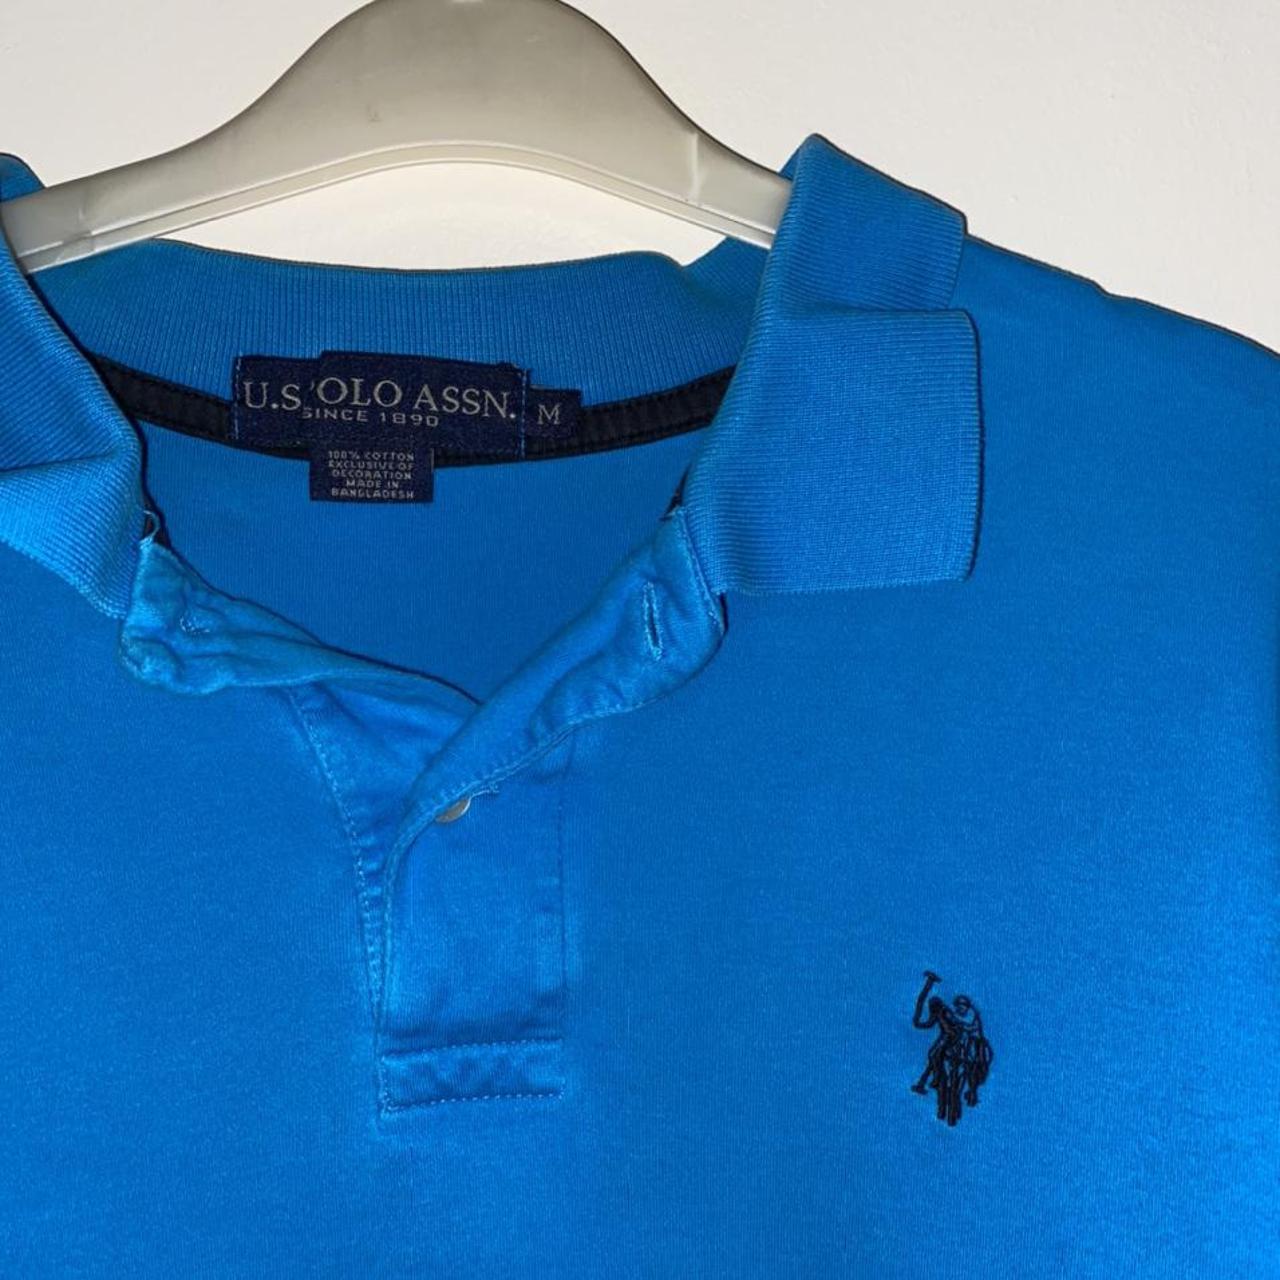 Product Image 2 - U.S. Polo Assn. Polo Shirt

Blue